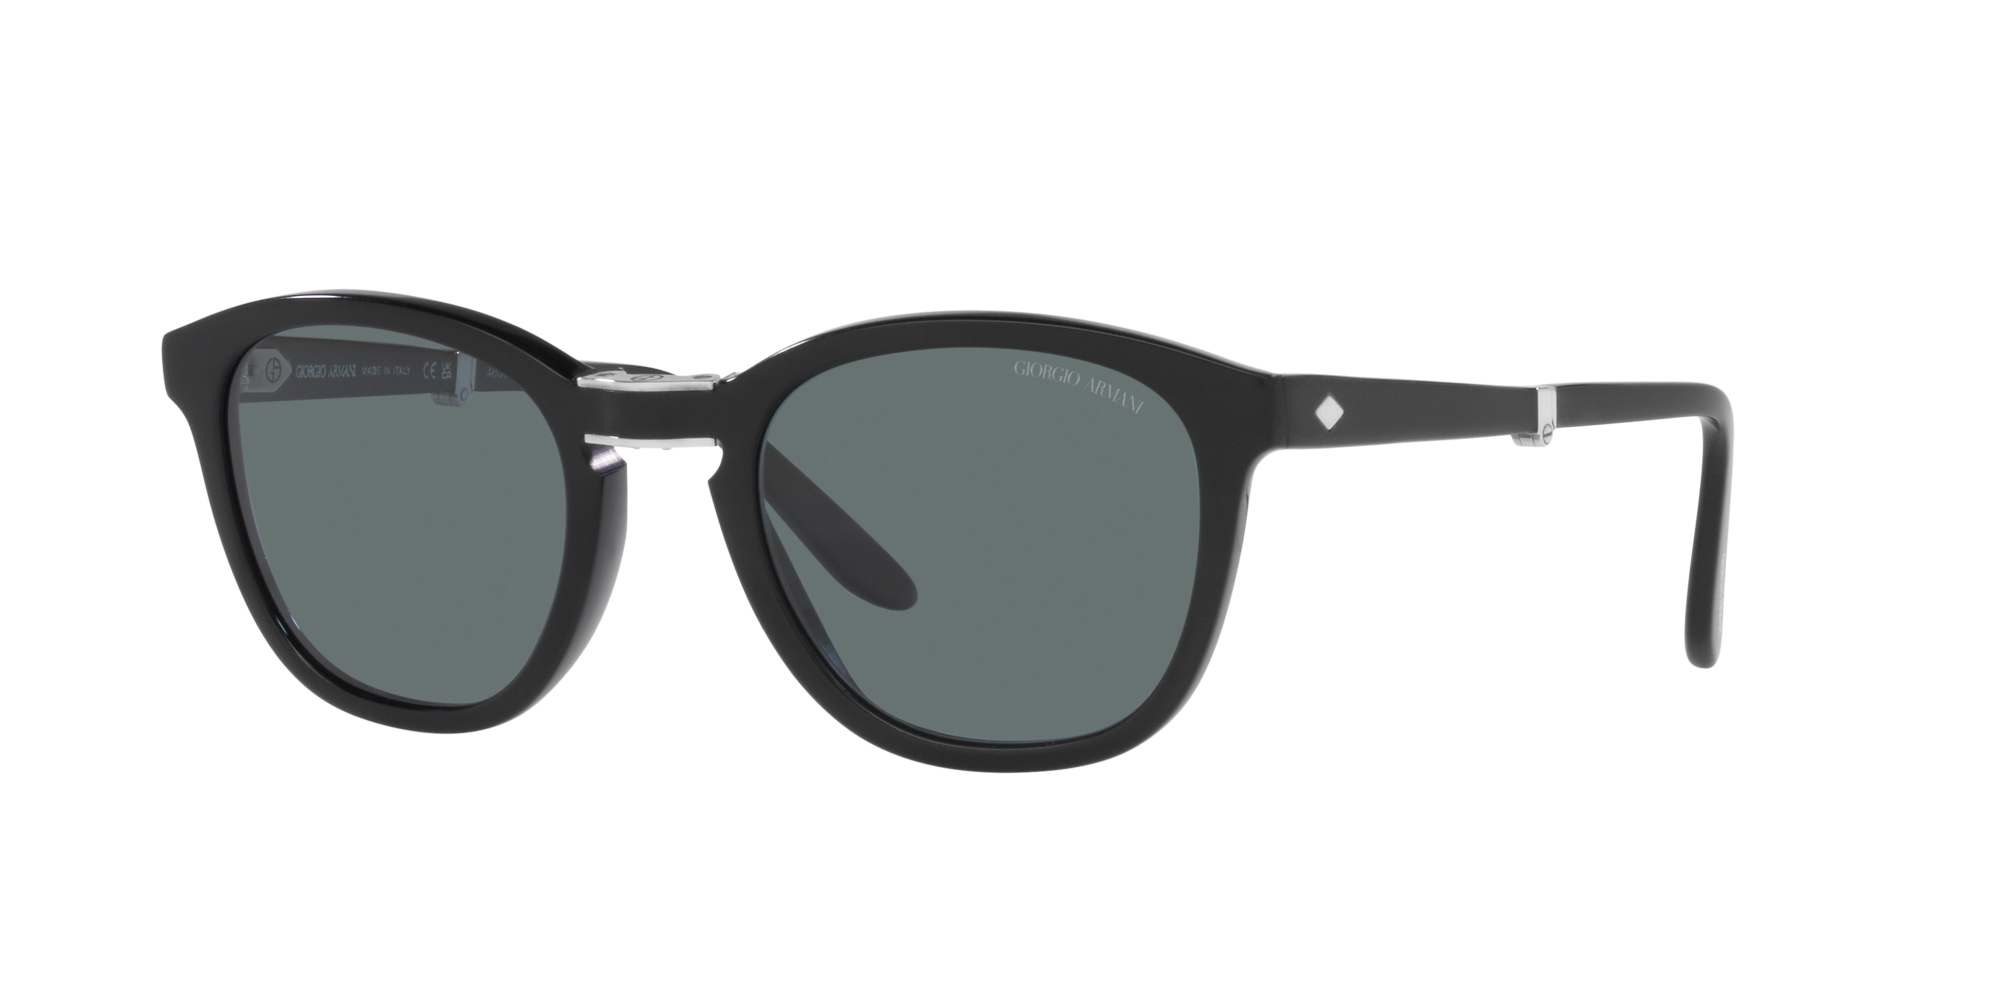 Sunglasses Giorgio Armani EA044 Schubert Glasses Successor